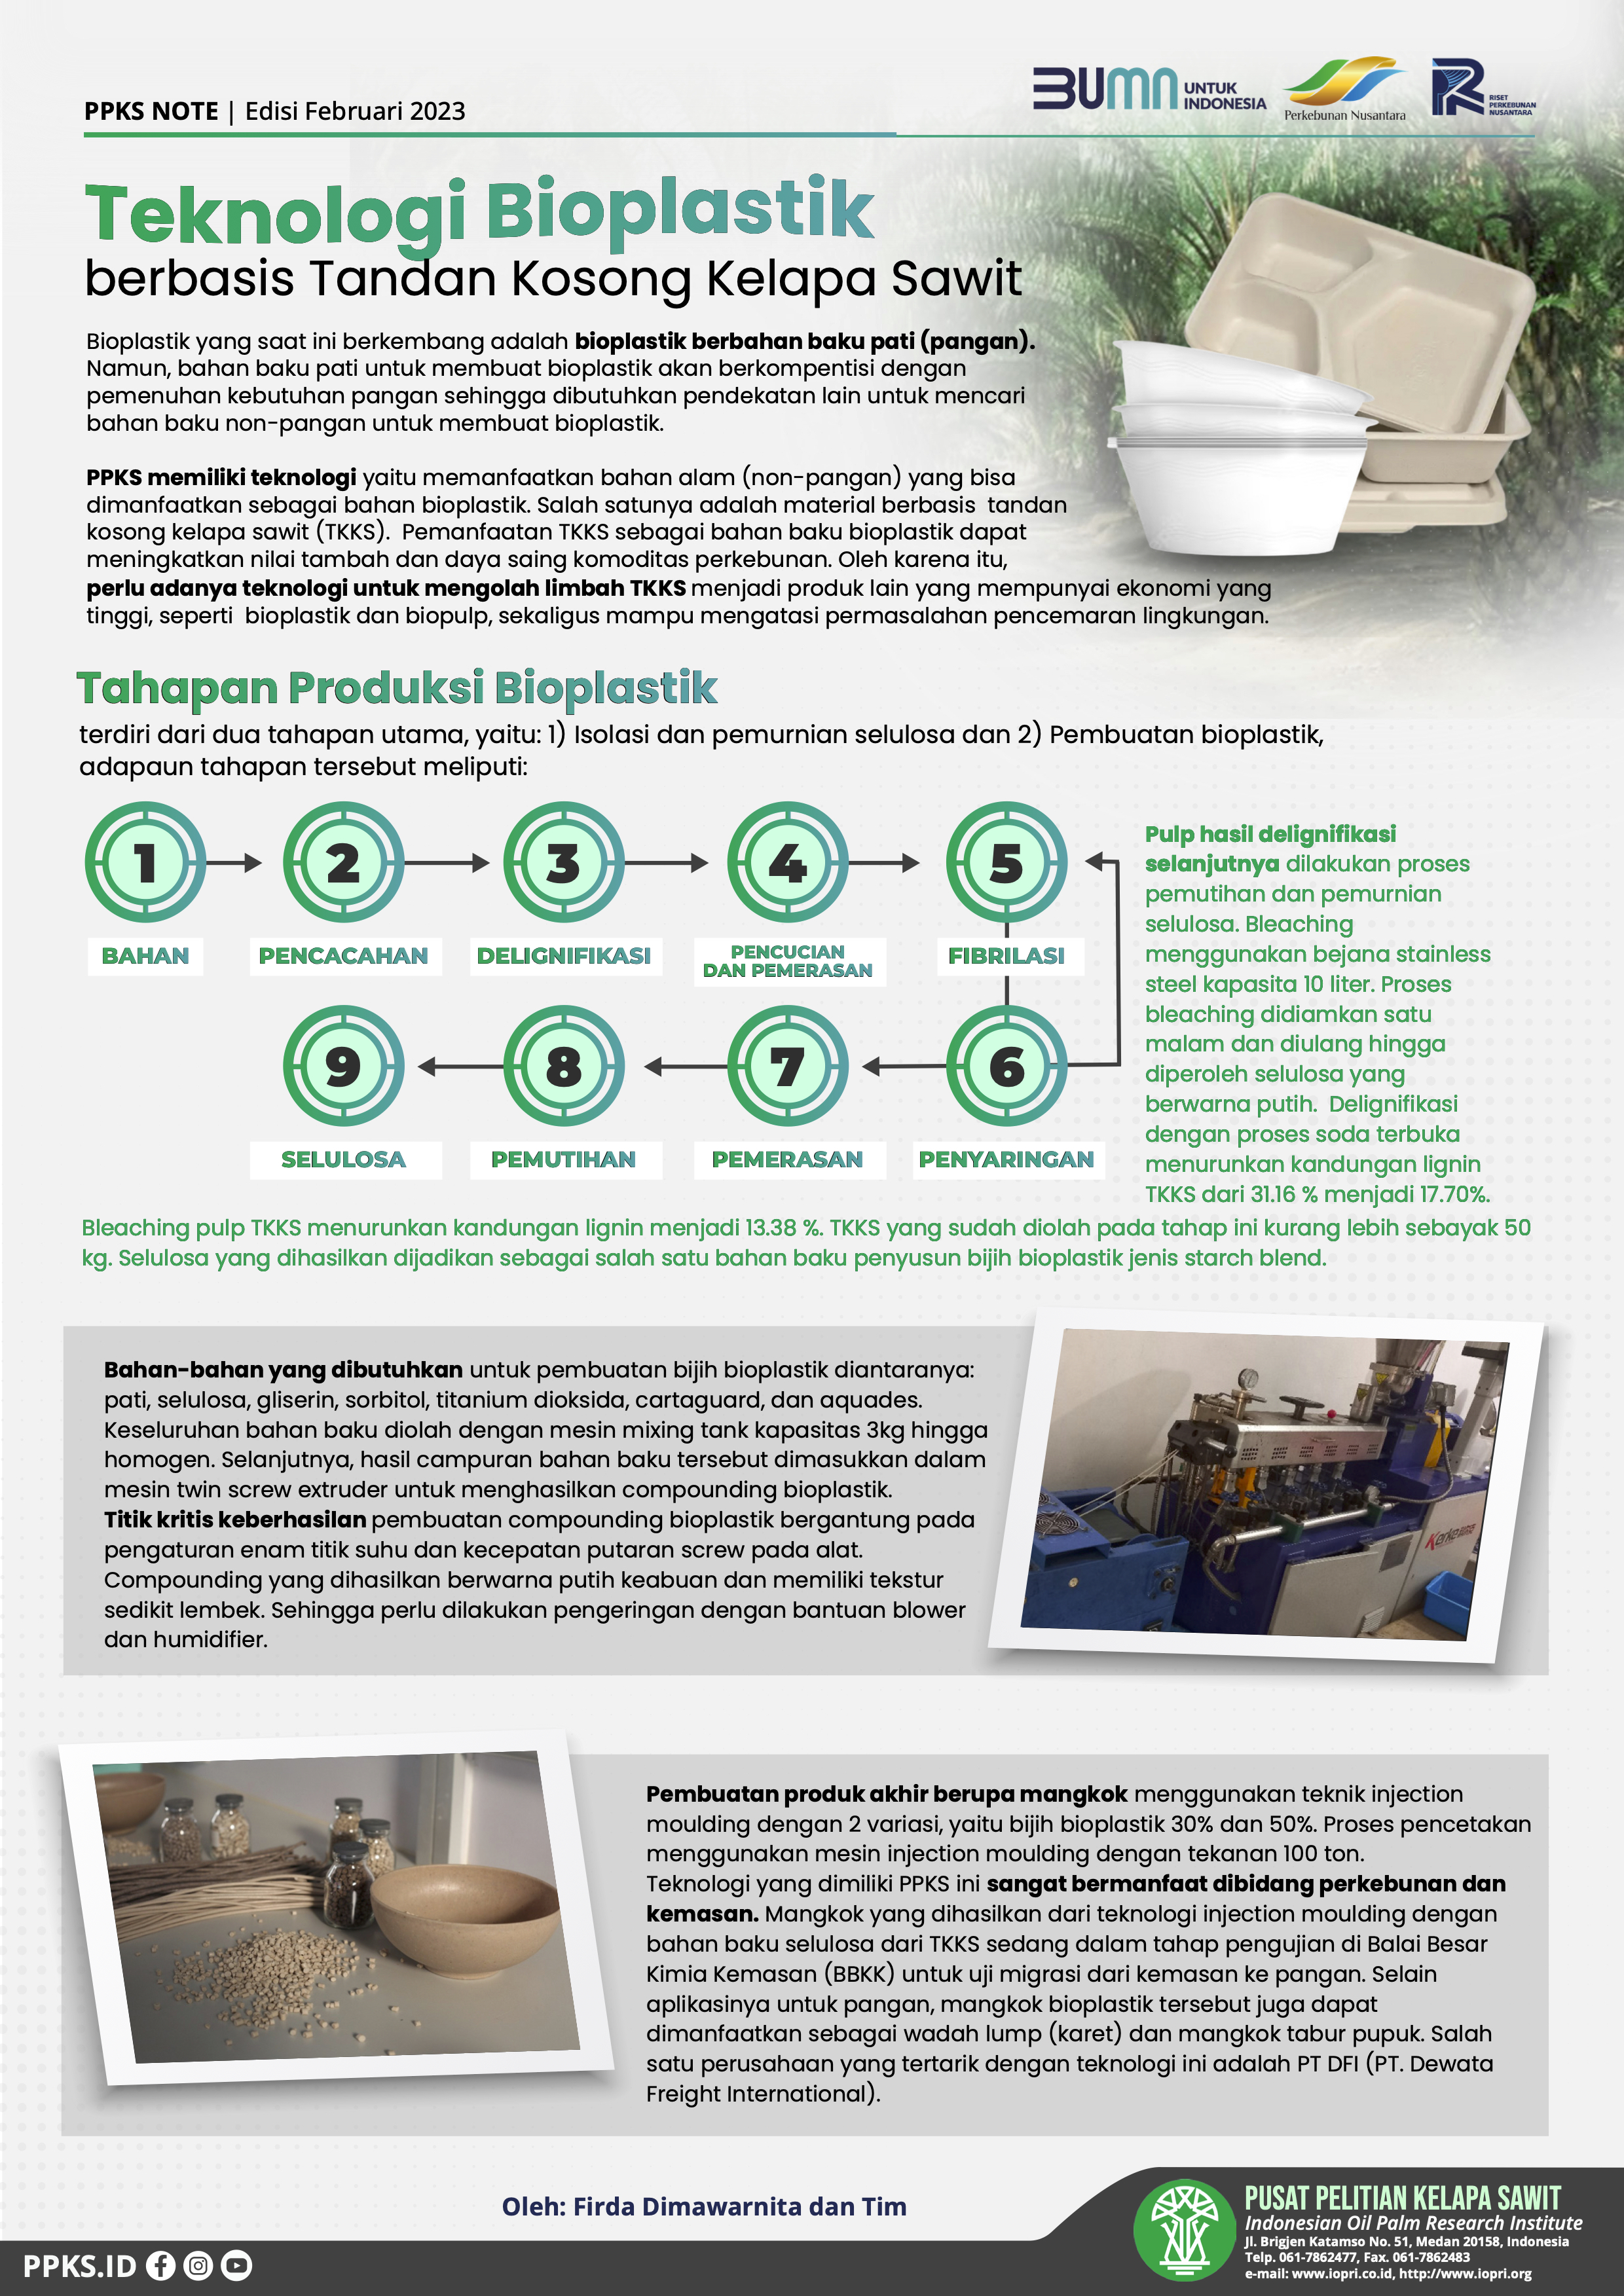 EDISI Februari 2023 - Teknologi Bioplastik berbasis Tandan Kosong Kelapa Sawit